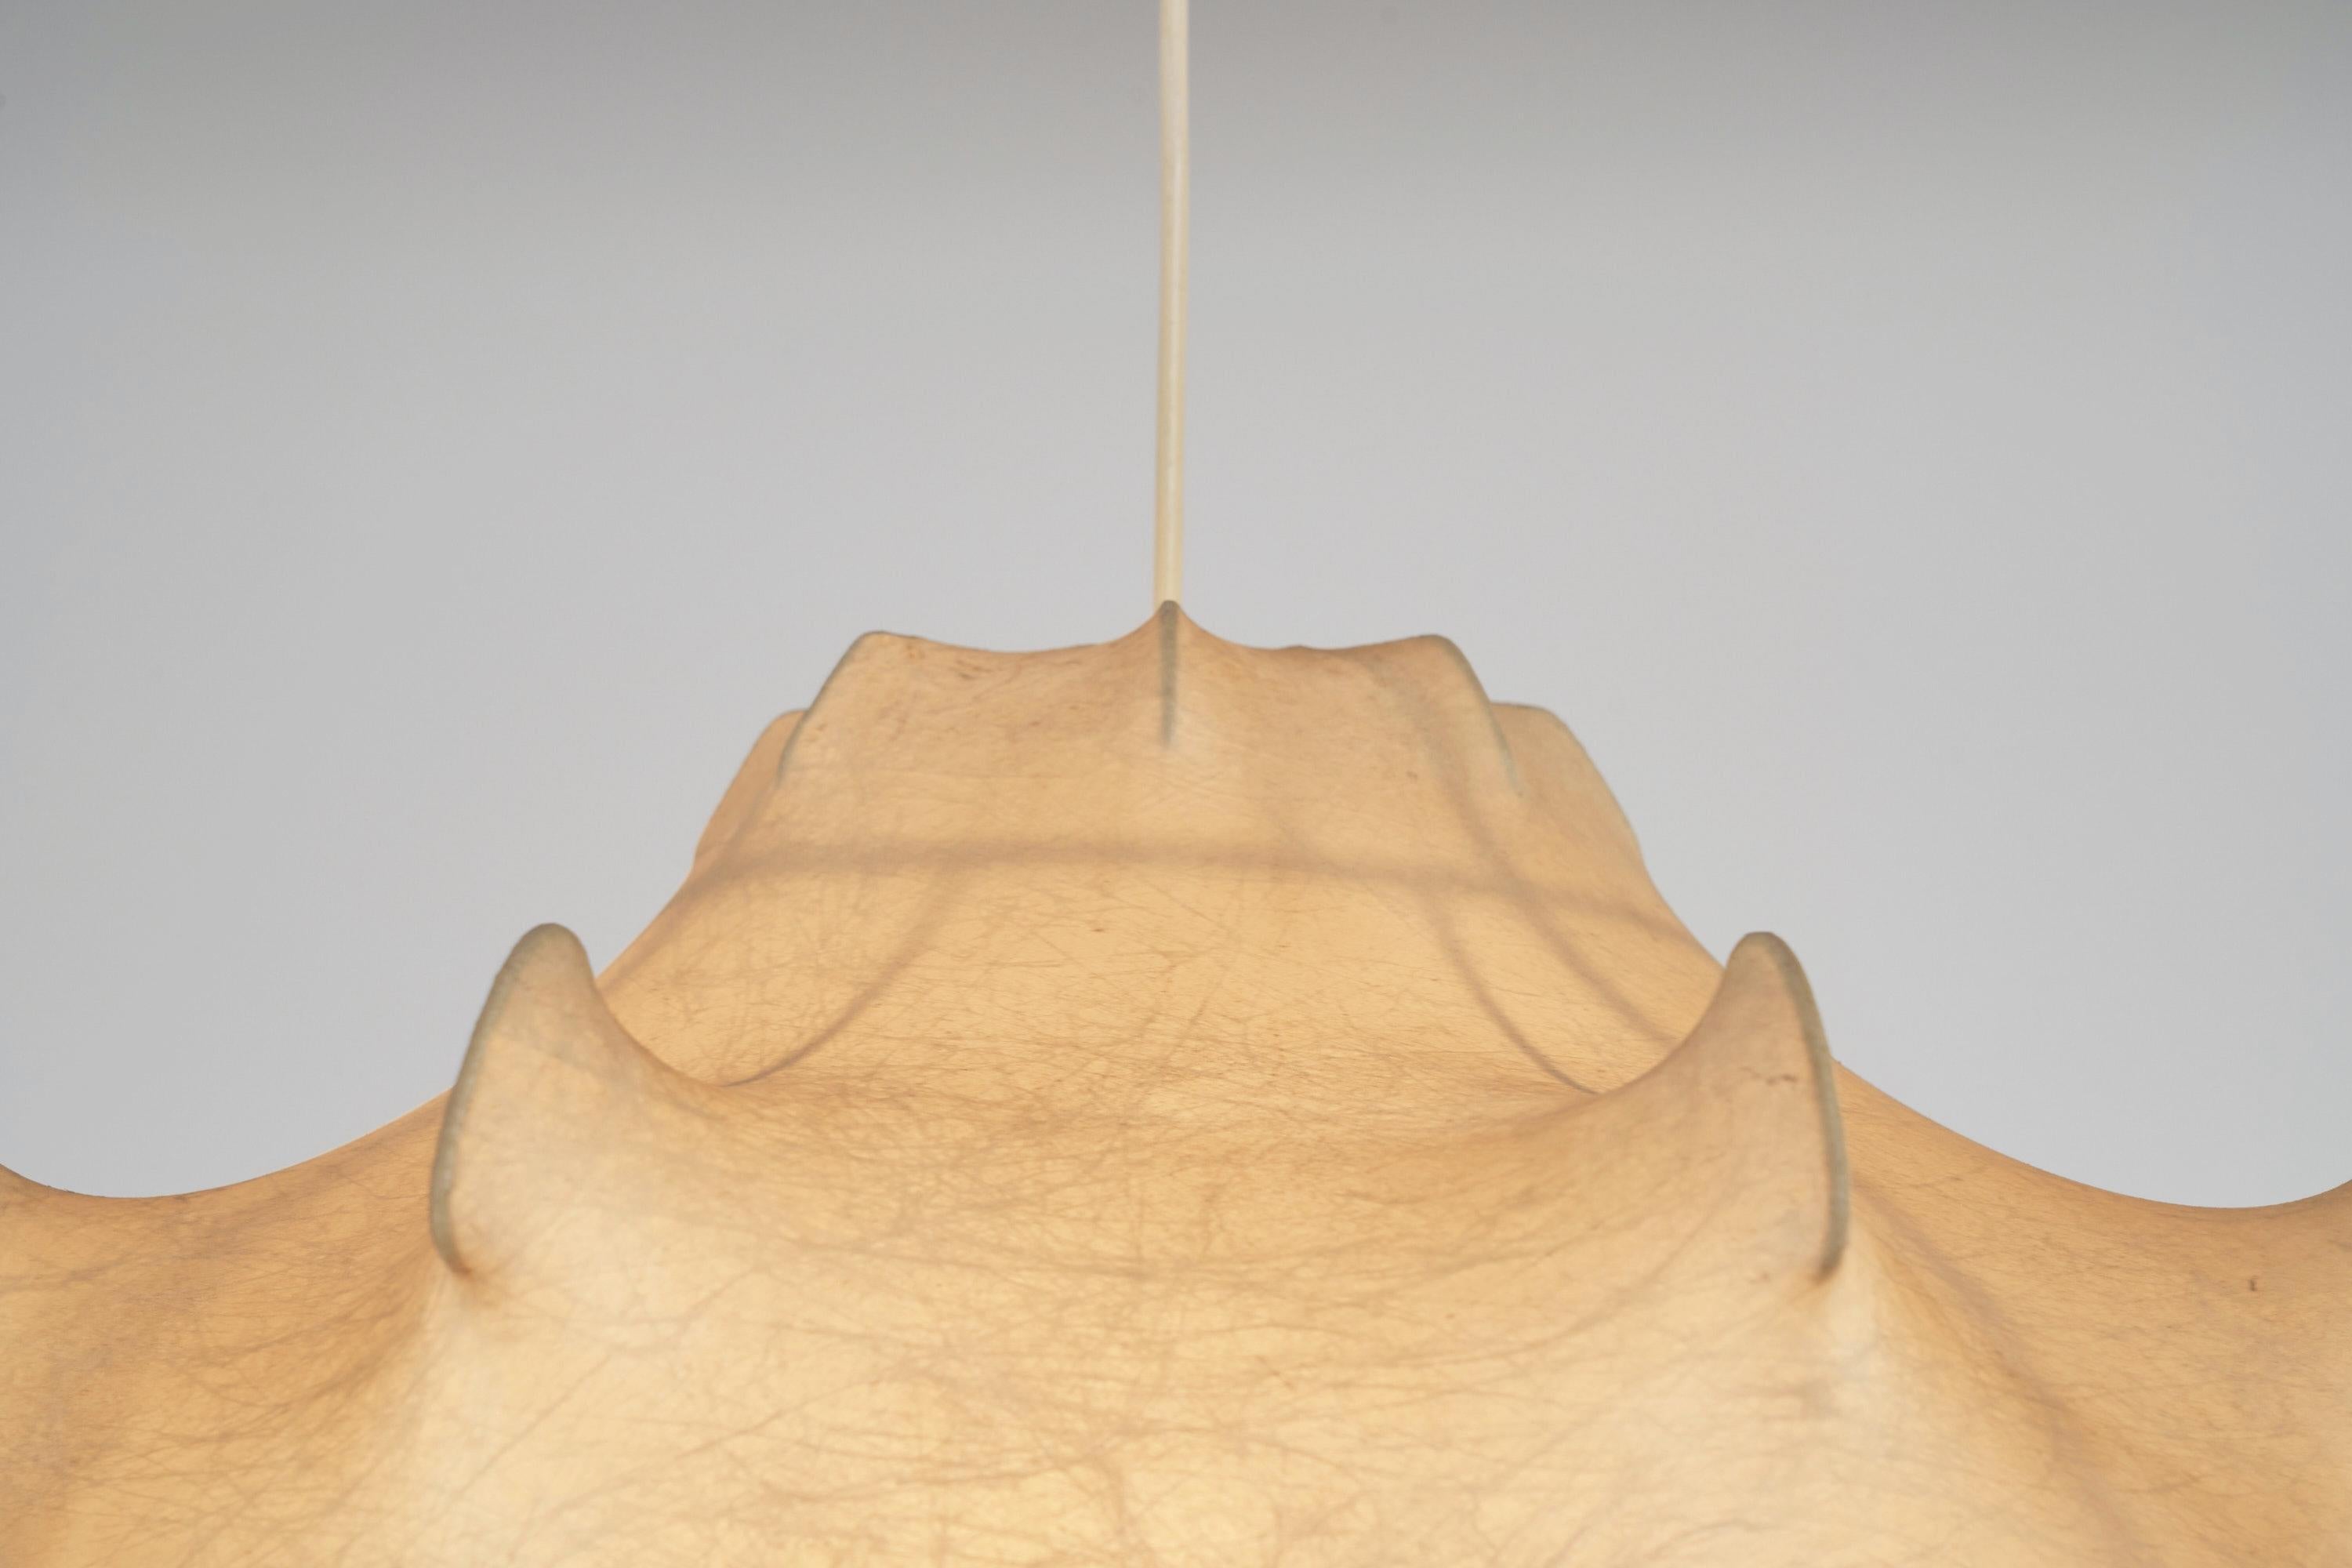 Seltenes frühes Exemplar der Taraxacum-Hängeleuchte, entworfen von Achille & Pier Giacomo Castiglioni und hergestellt von Flos, Italien 1960. Dieser ikonische Kronleuchter verfügt über ein einzigartiges Konstruktionsverfahren, das die Form des